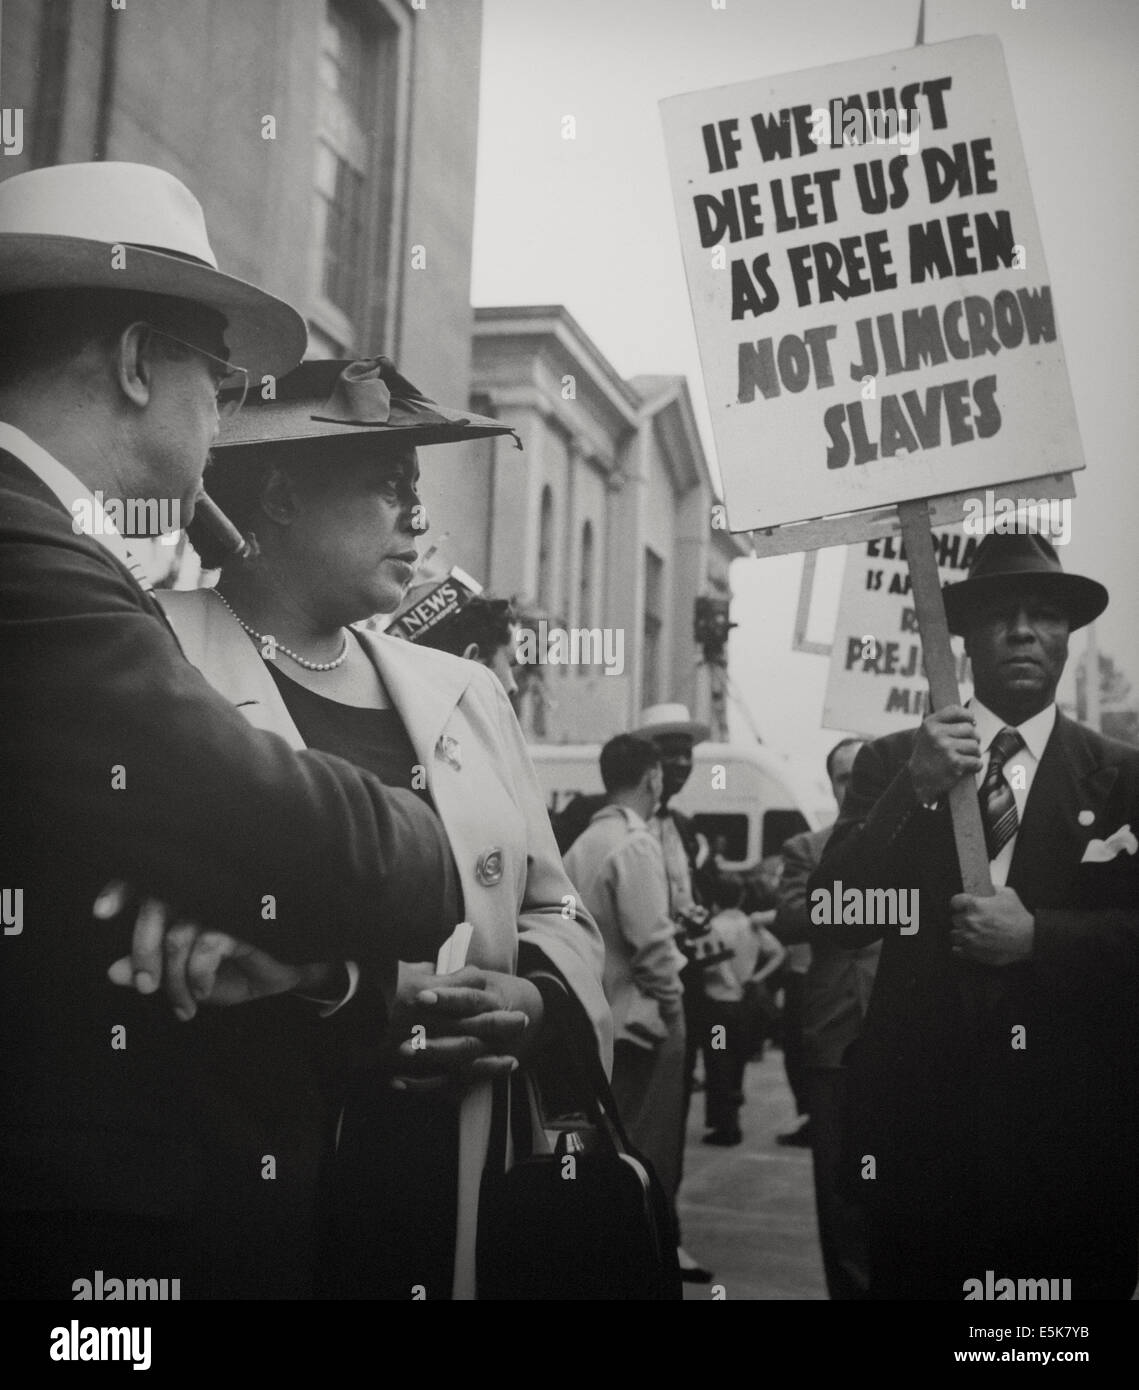 La protesta de los derechos civiles afroamericanos 1960 - Negro - Hombre con cartel "Si Debemos Morir Muramos nosotros como hombres libres, no esclavos Jim Crow Foto de stock